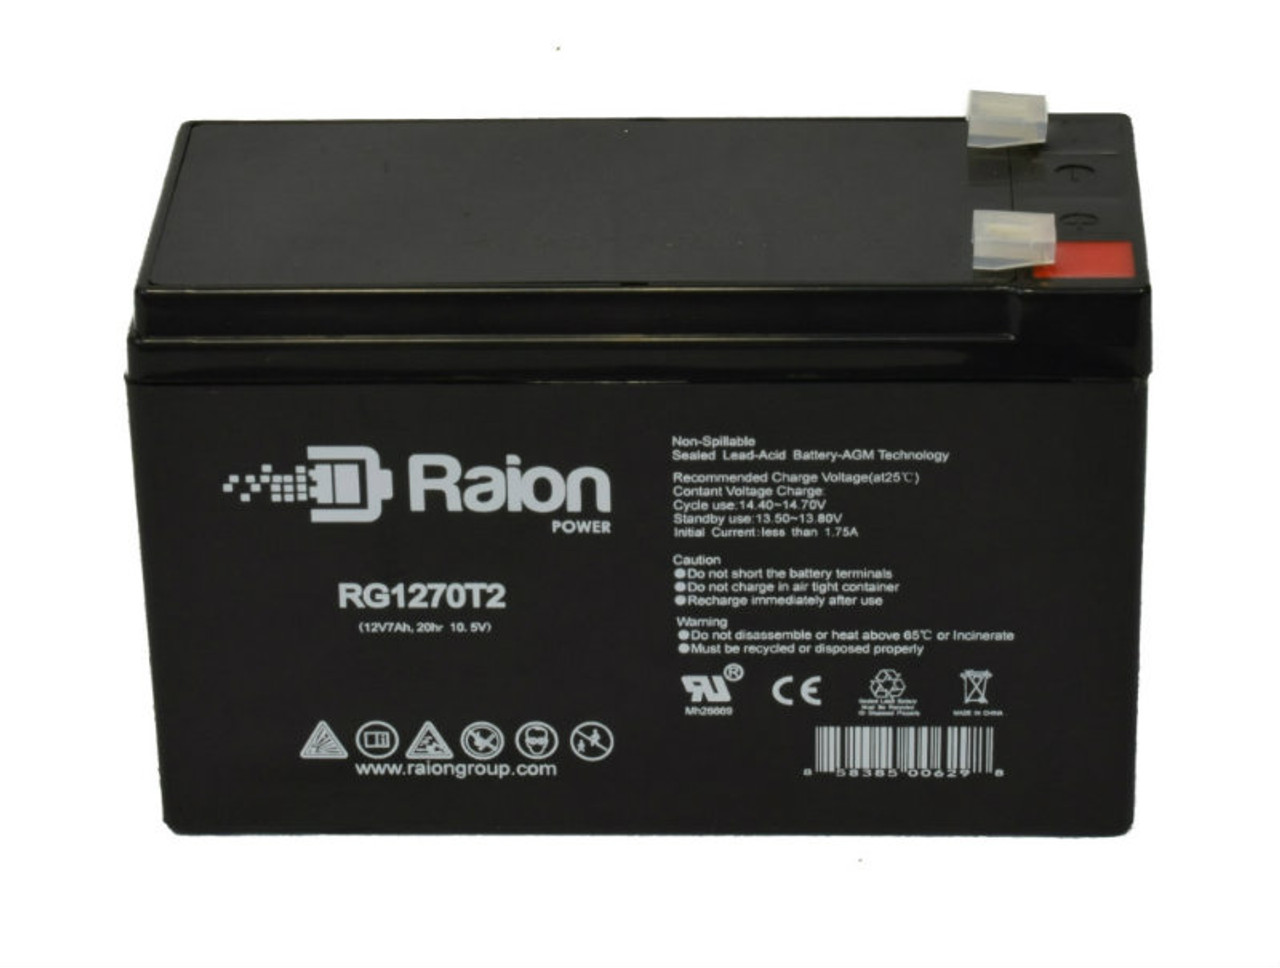 Raion Power RG1270T1 12V 7Ah Lead Acid Battery for Union Battery MX-12070